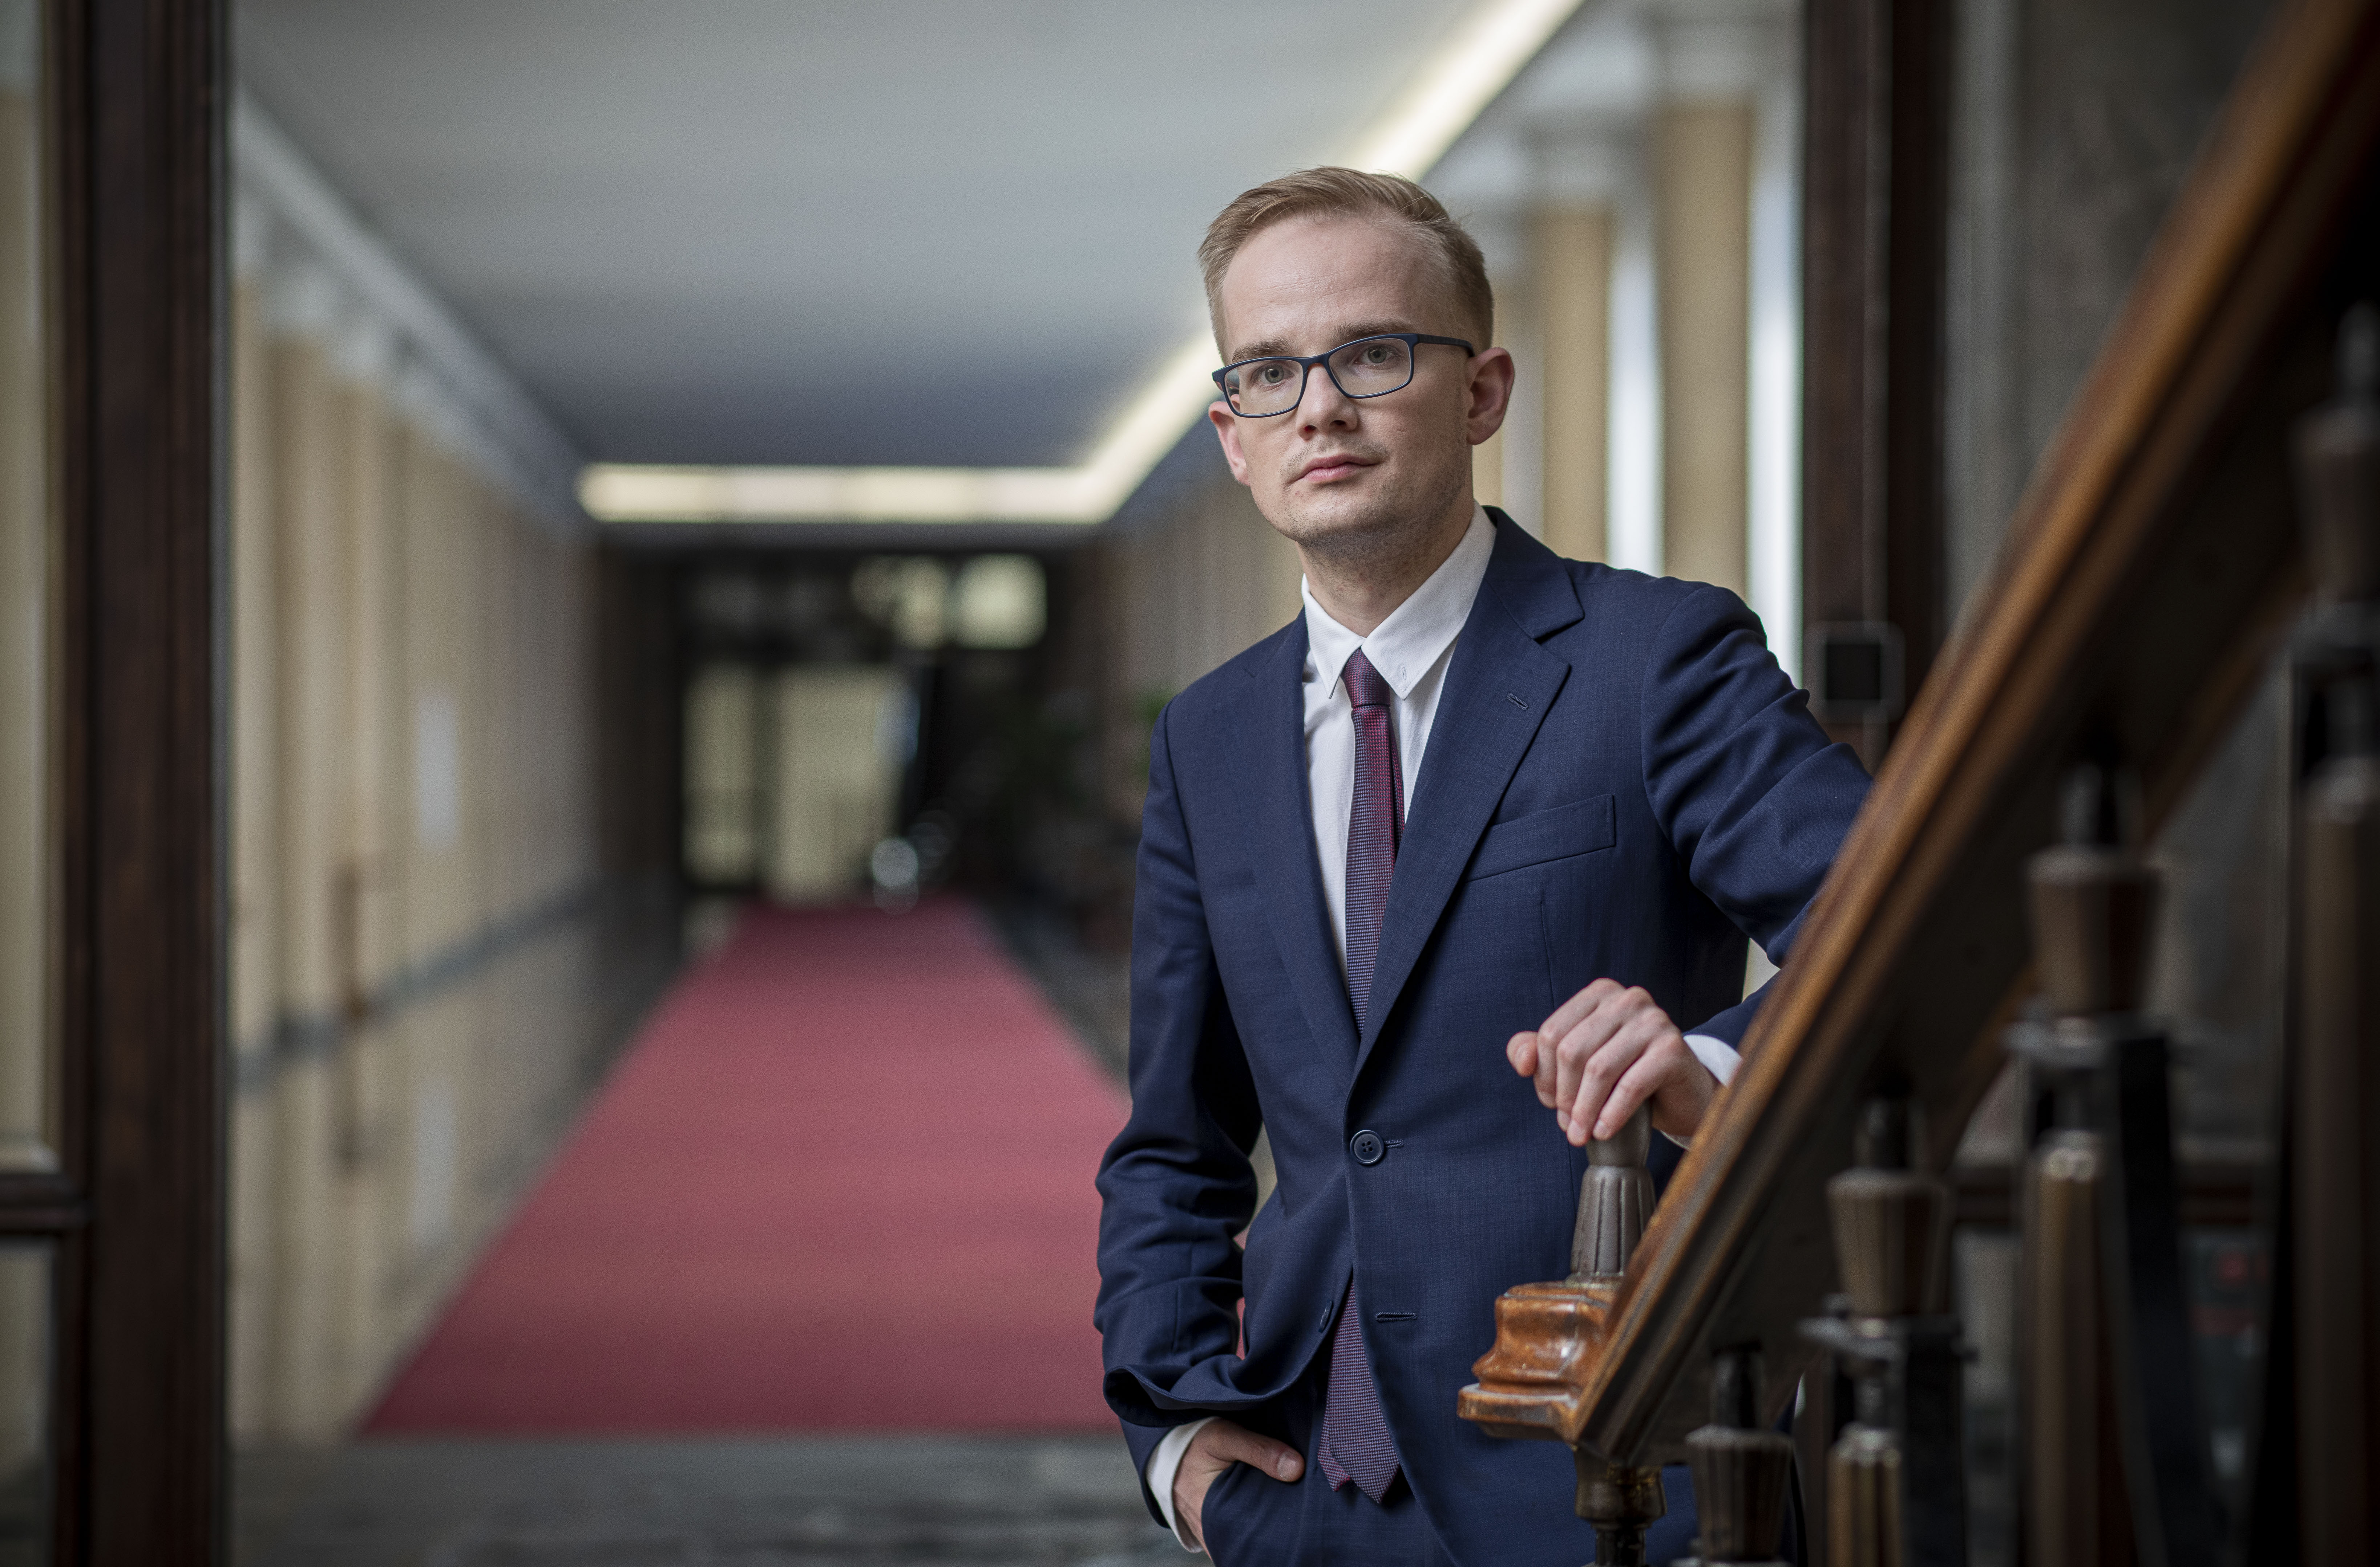 Piotr Patkowski Podsekretarz Stanu, Główny Rzecznik Dyscypliny Finansów Publicznych na tle ministerialnego korytarza